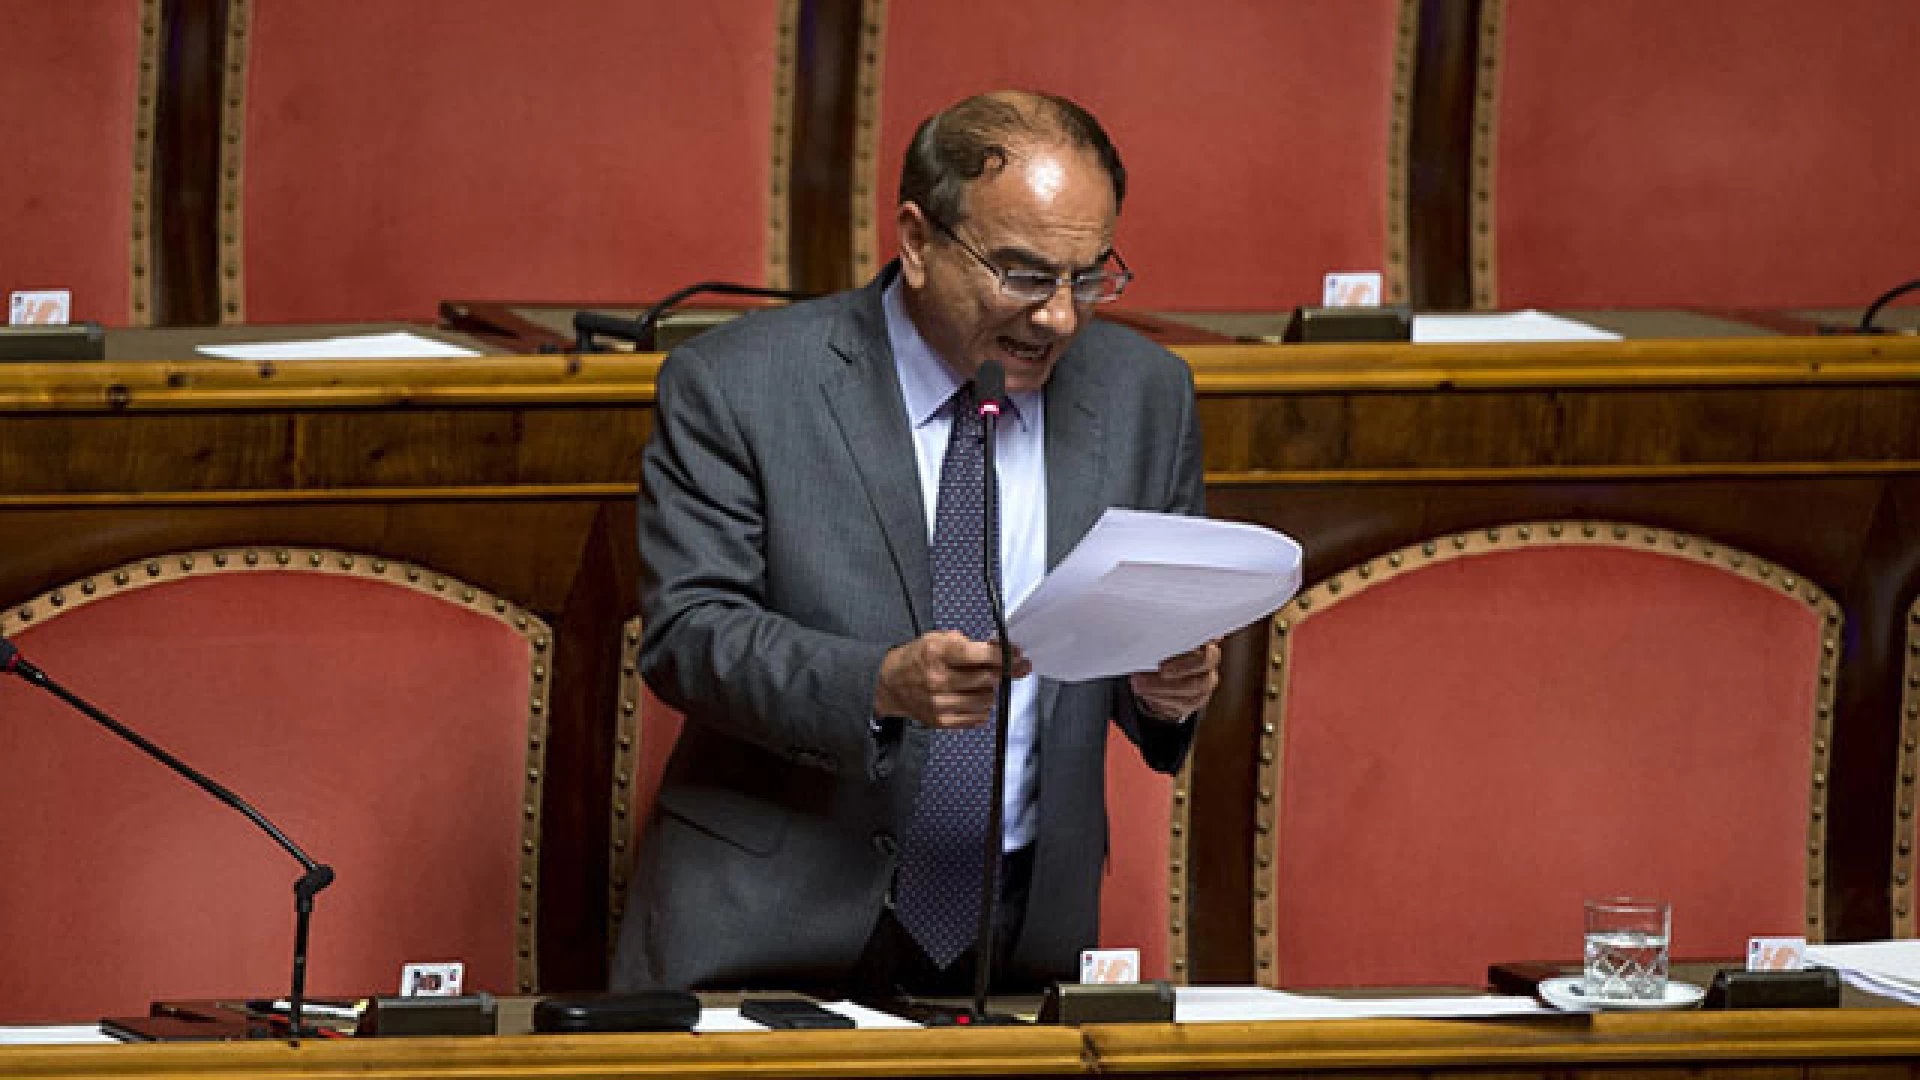 Nube radioattiva su Italia, il senatore Scilipoti chiede al Governo di riferire in Parlamento.